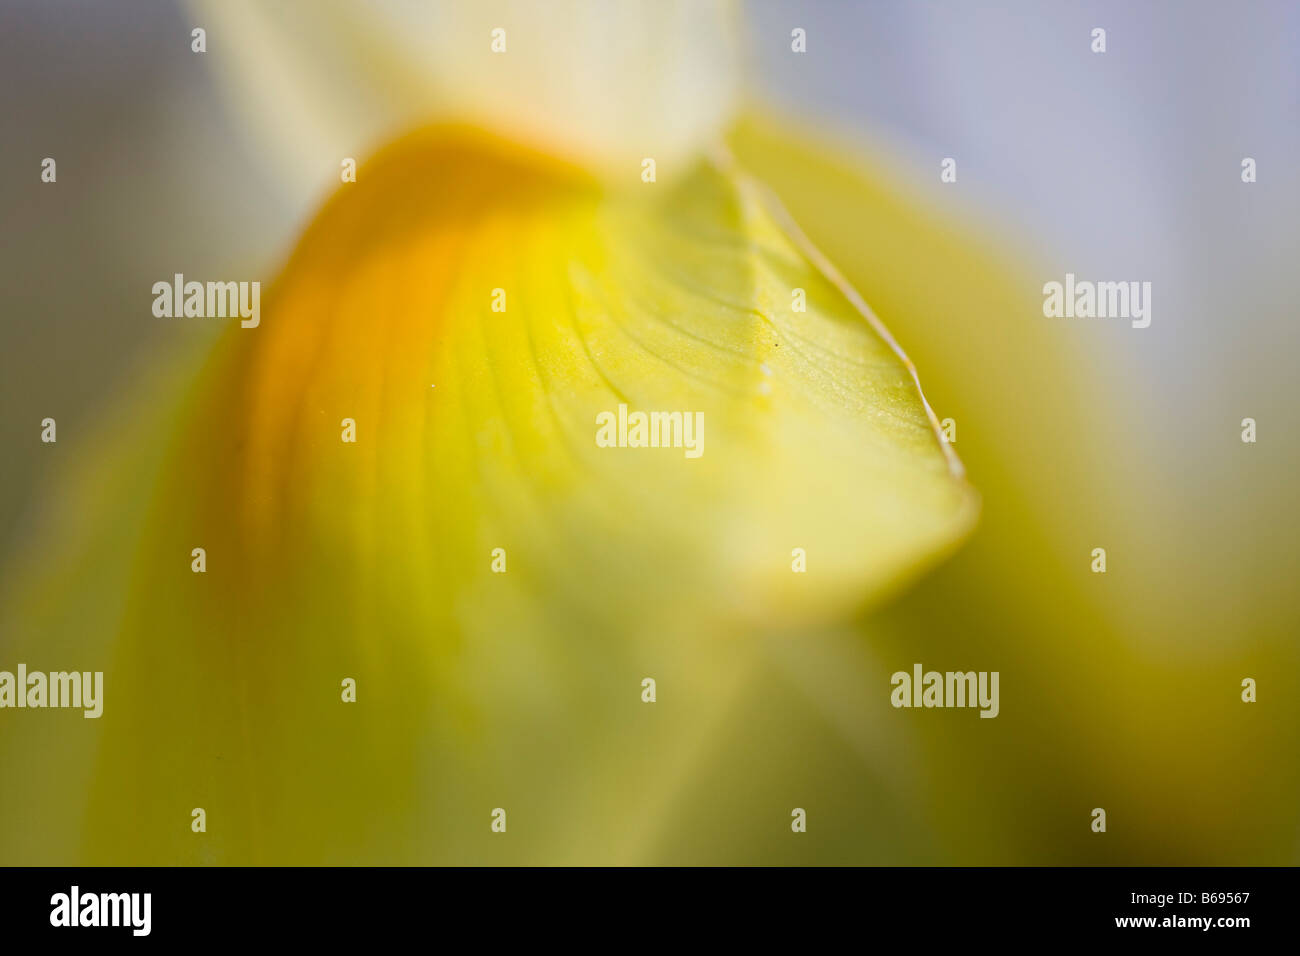 Immagine astratta di un orchidea gialla Foto Stock